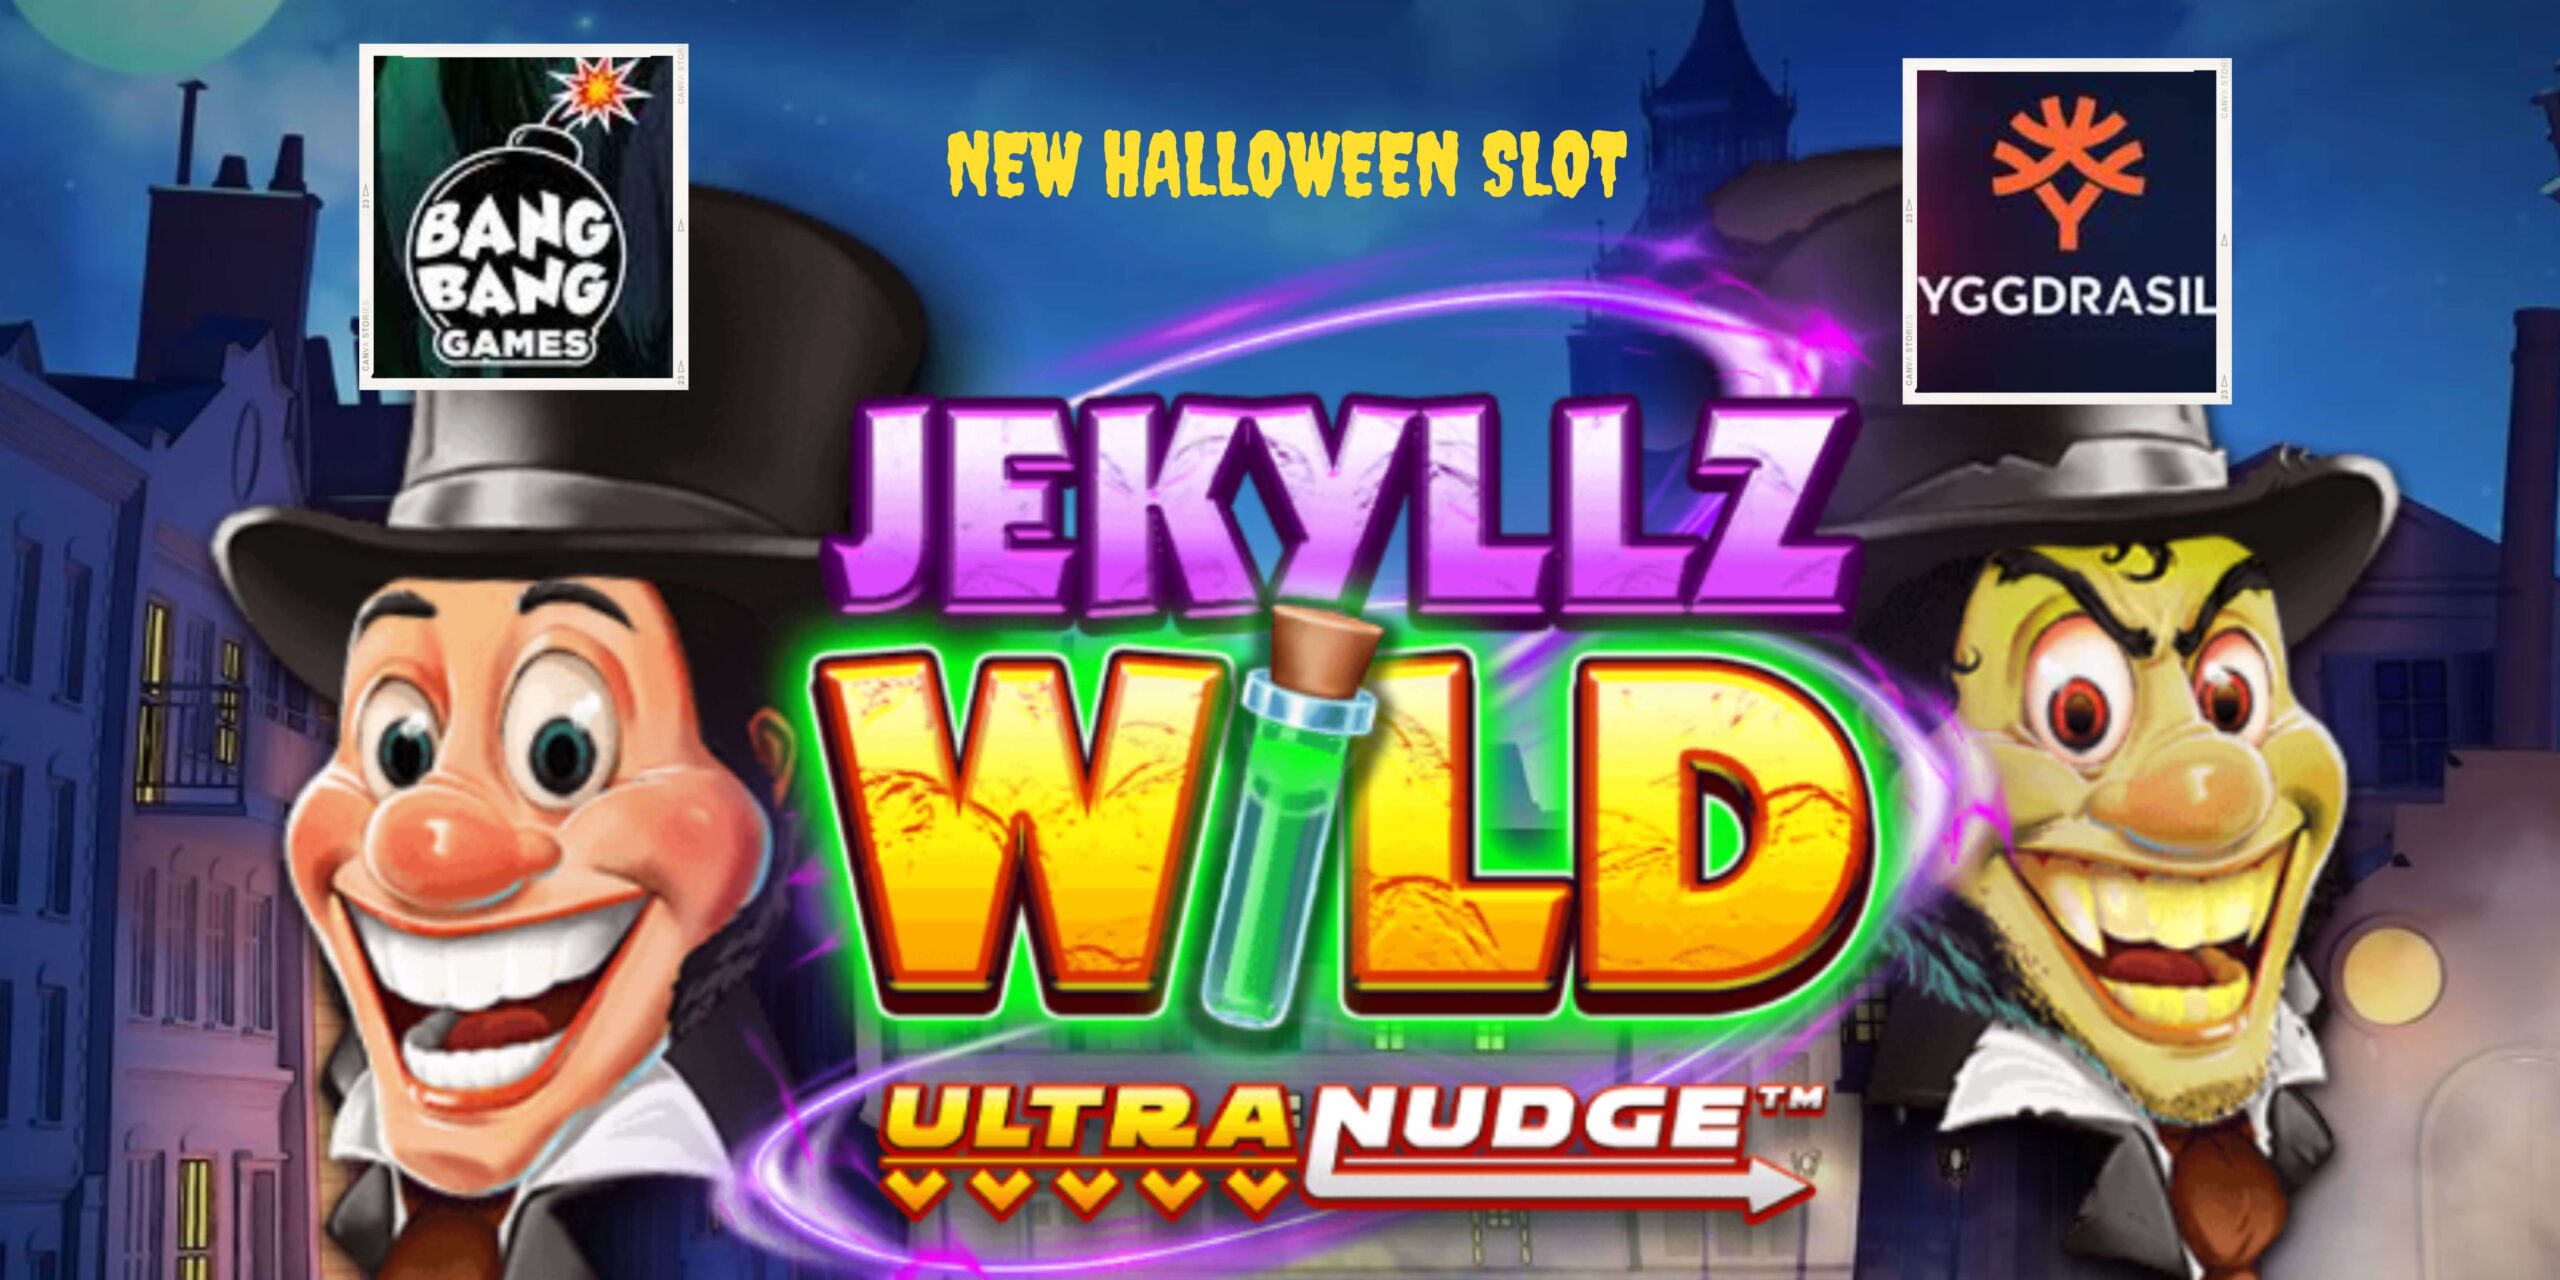 Yggdrasil & Bang Bang Games Meluncurkan Jekylzz Wild Ultranudge Slot untuk Halloween